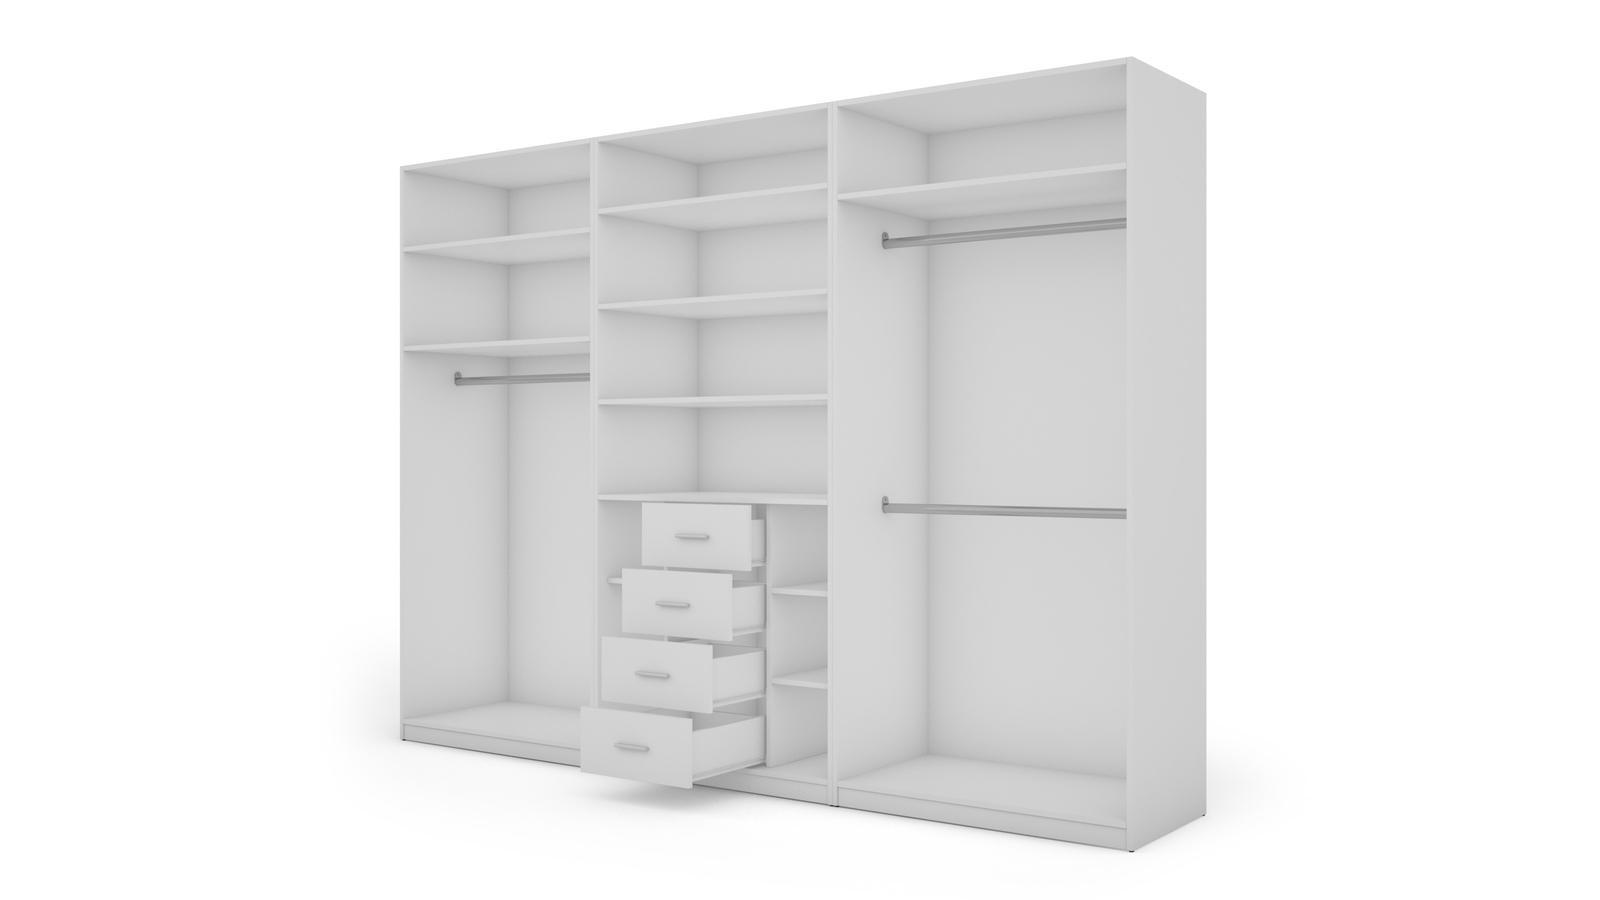 Duża szafa do garderoby XXL szuflady biała 300x220x59 cm  nr. 4